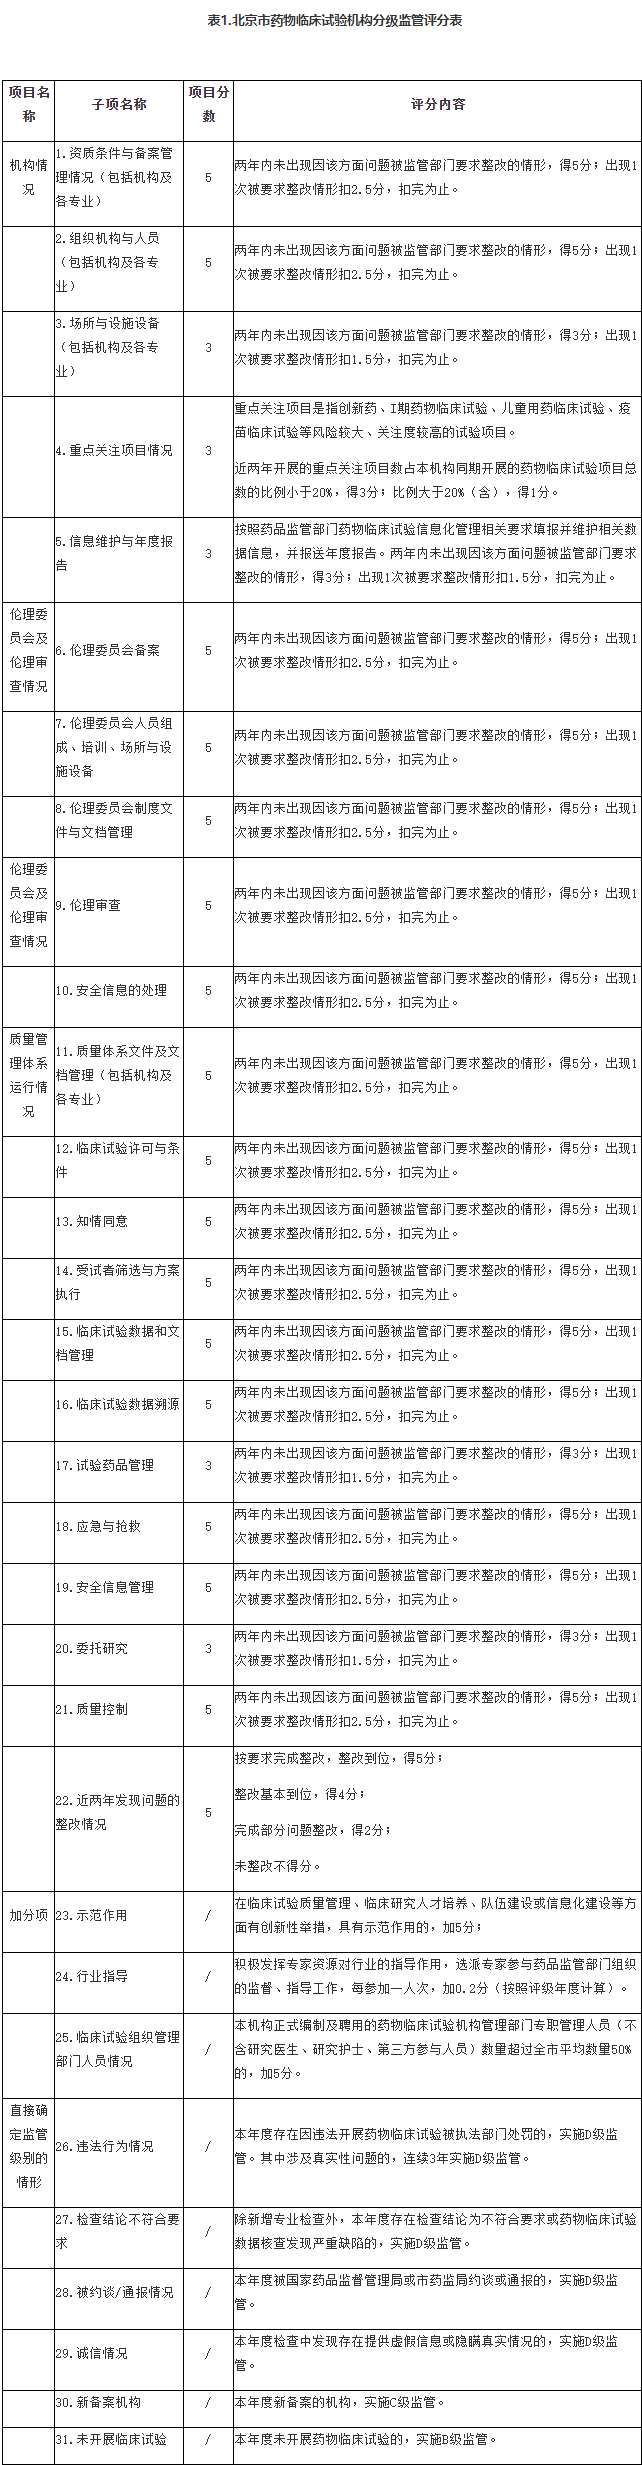 表1.北京市藥物臨床試驗機構分級監管評分表.png